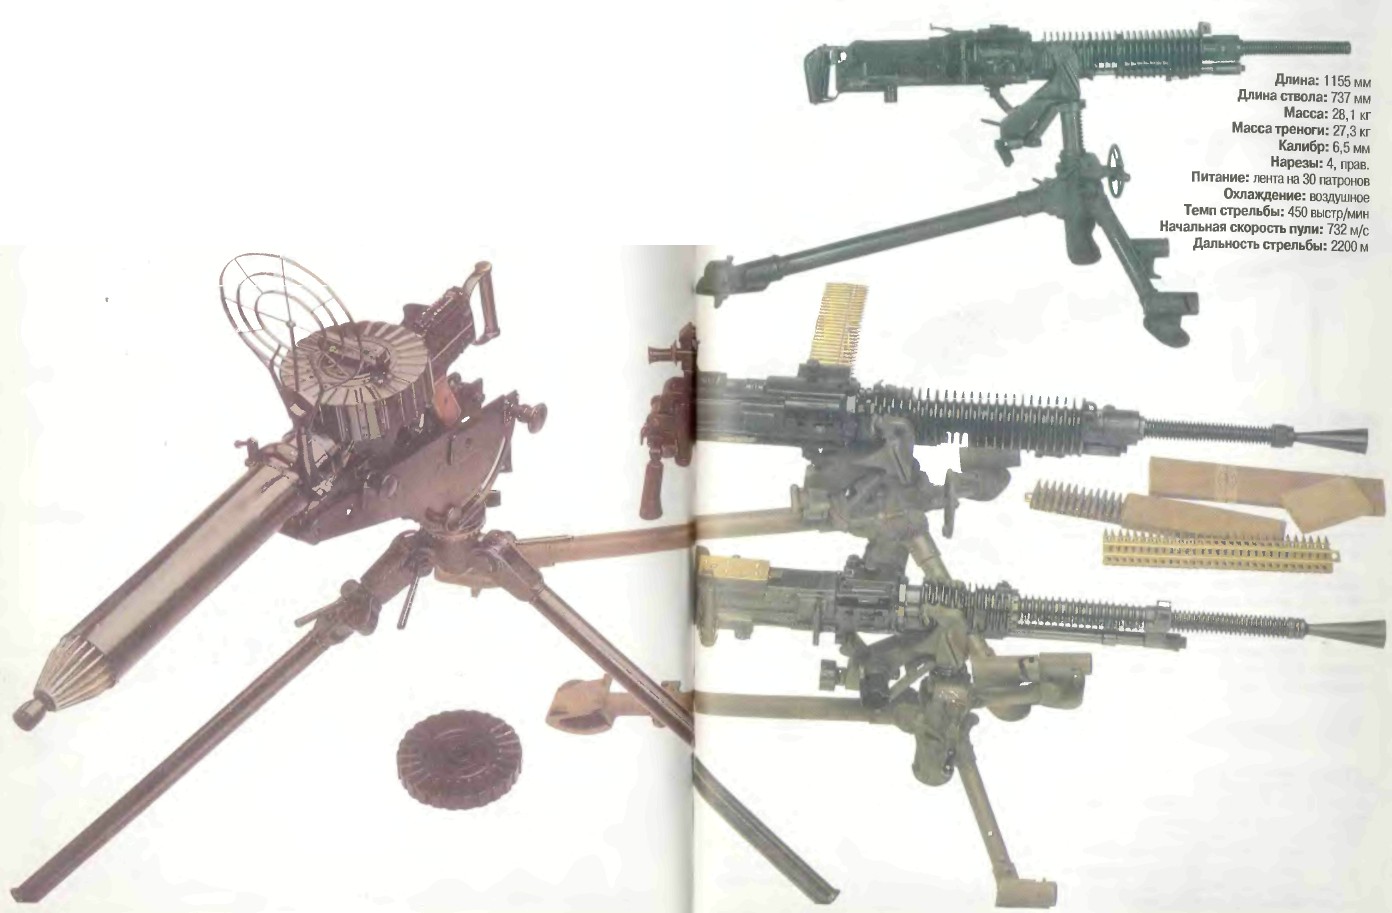 Япония: пулемет ТАИСО14 (ТИП 3), ТИП 92 (КОПИЯ ЛЬЮИСА) И ТИП С ВОЗДУШНЫМ ОХЛАЖДЕНИЕМ (1941)  - фото, описание, характеристики, история